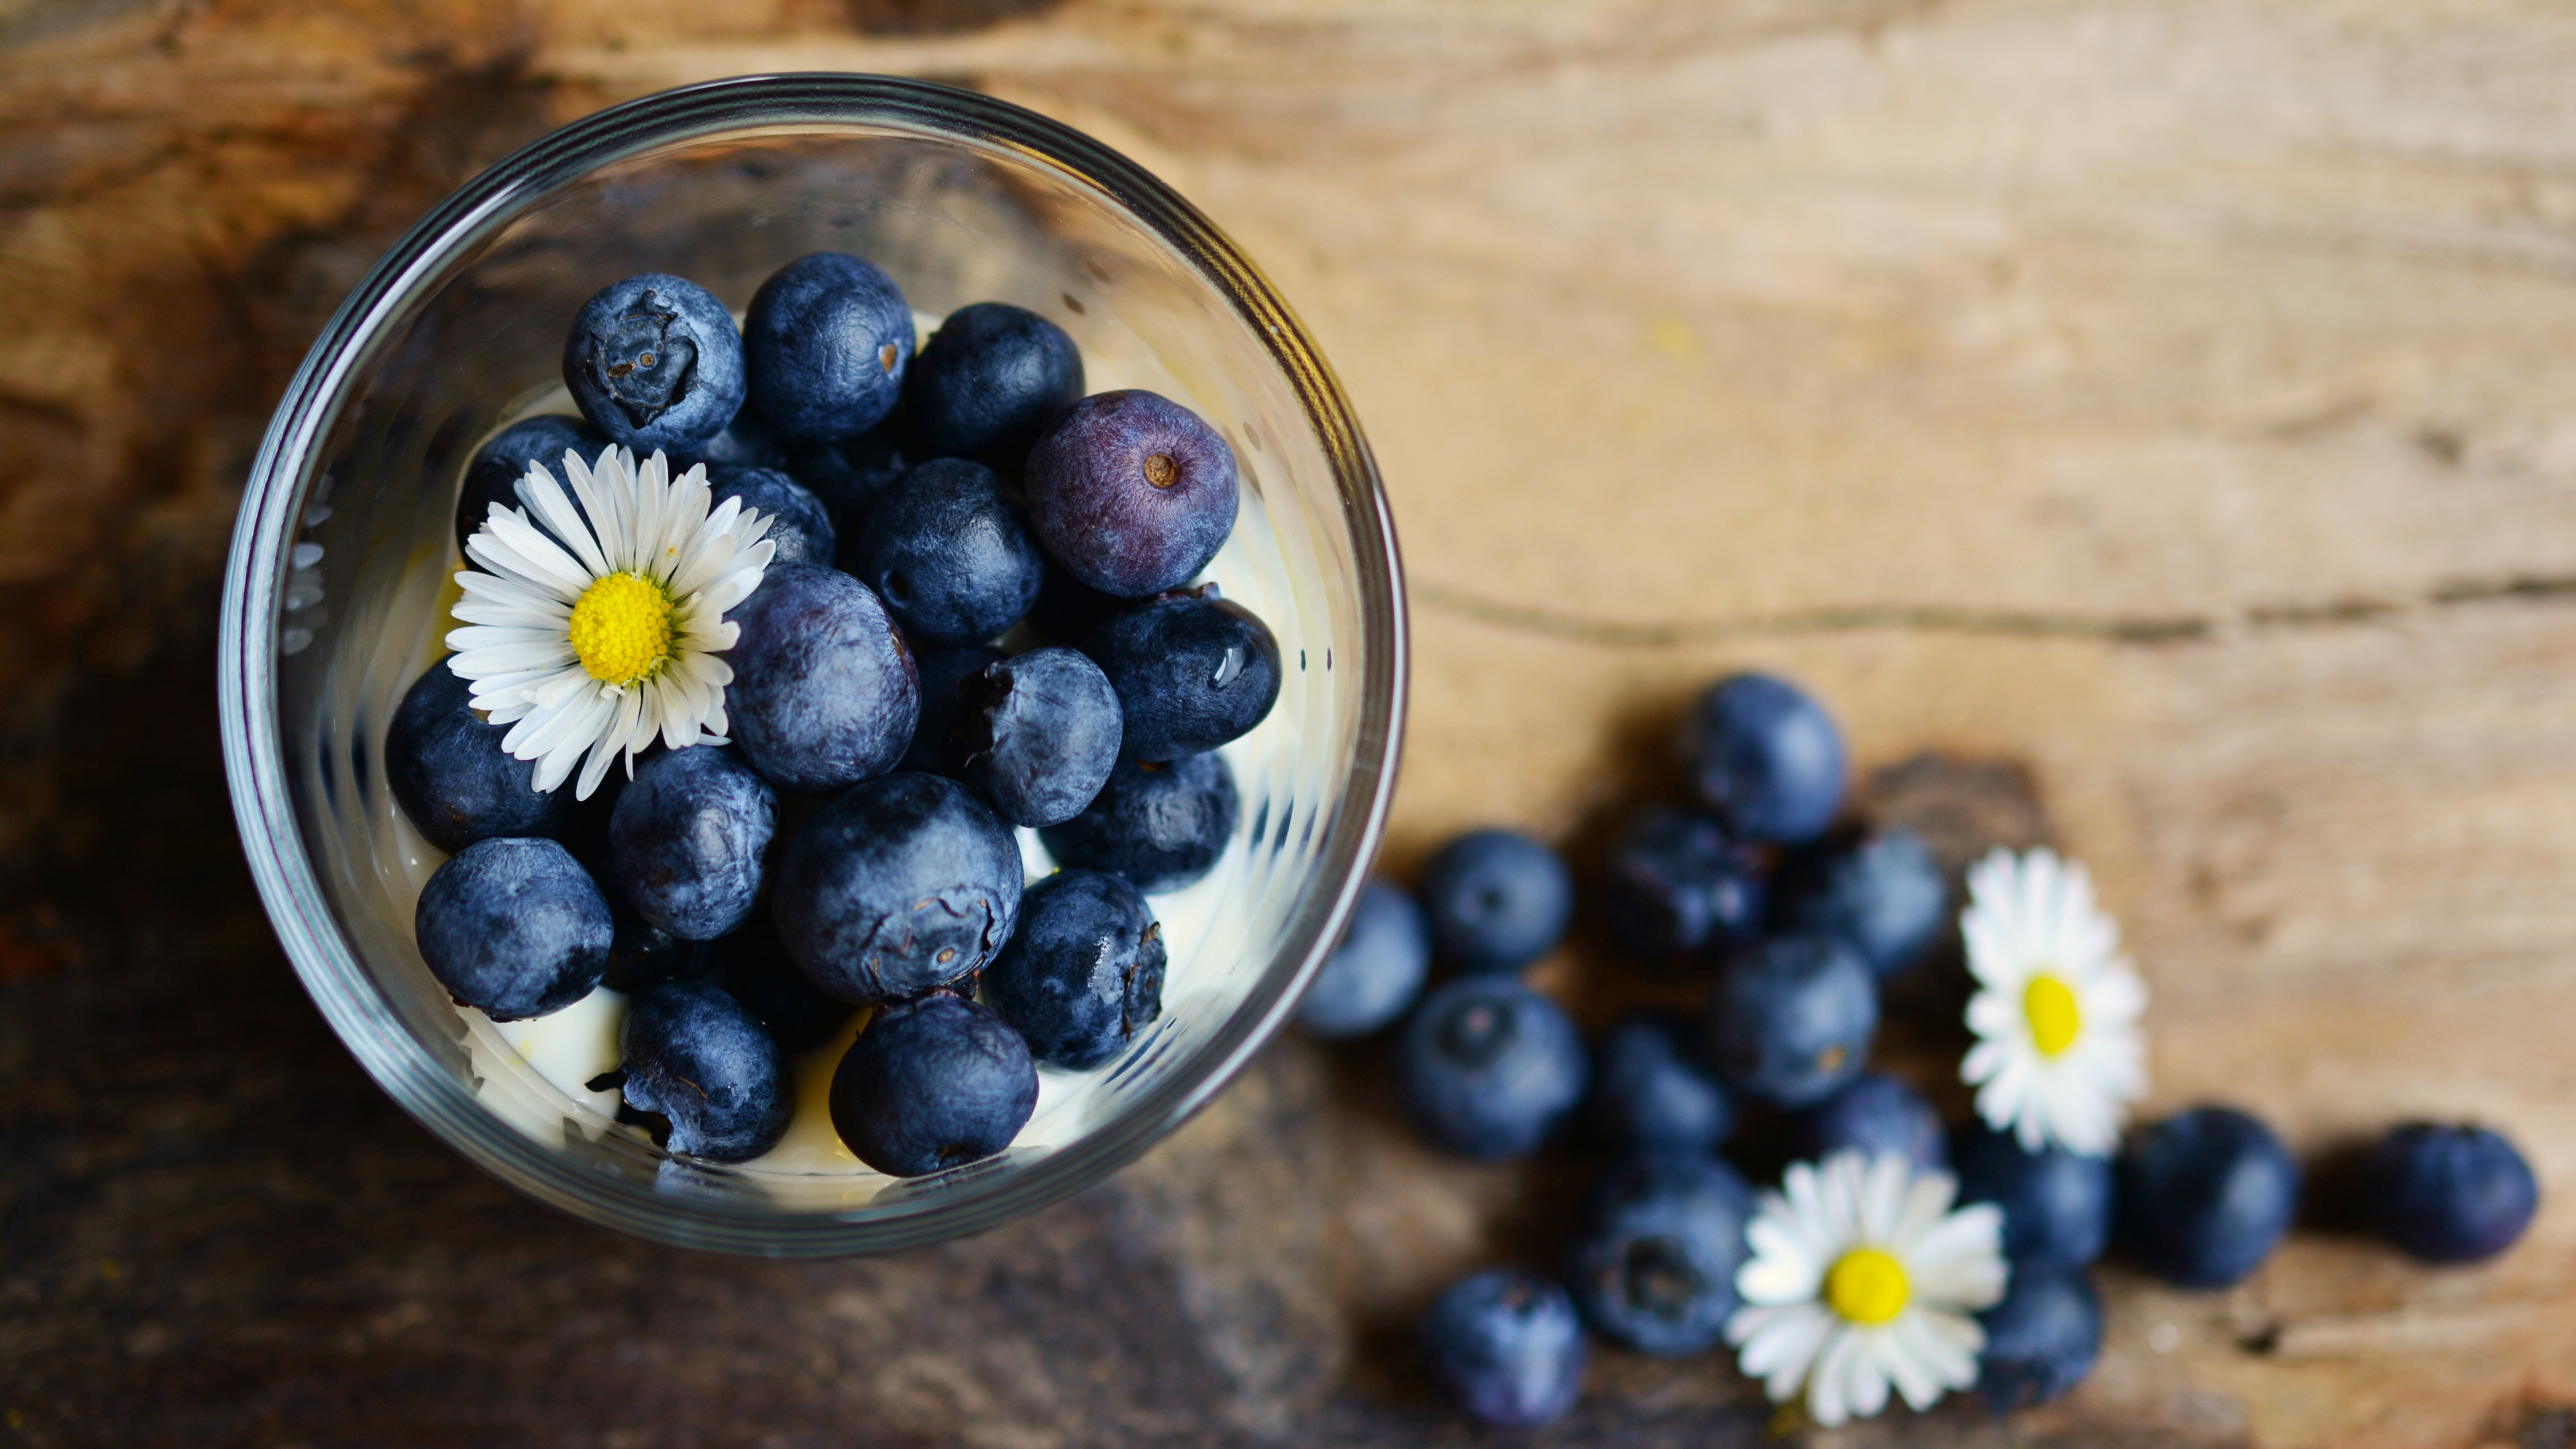 蓝莓, 食品, 梅斯皮诺亚, 营养, 健康 壁纸 3840x2160 允许